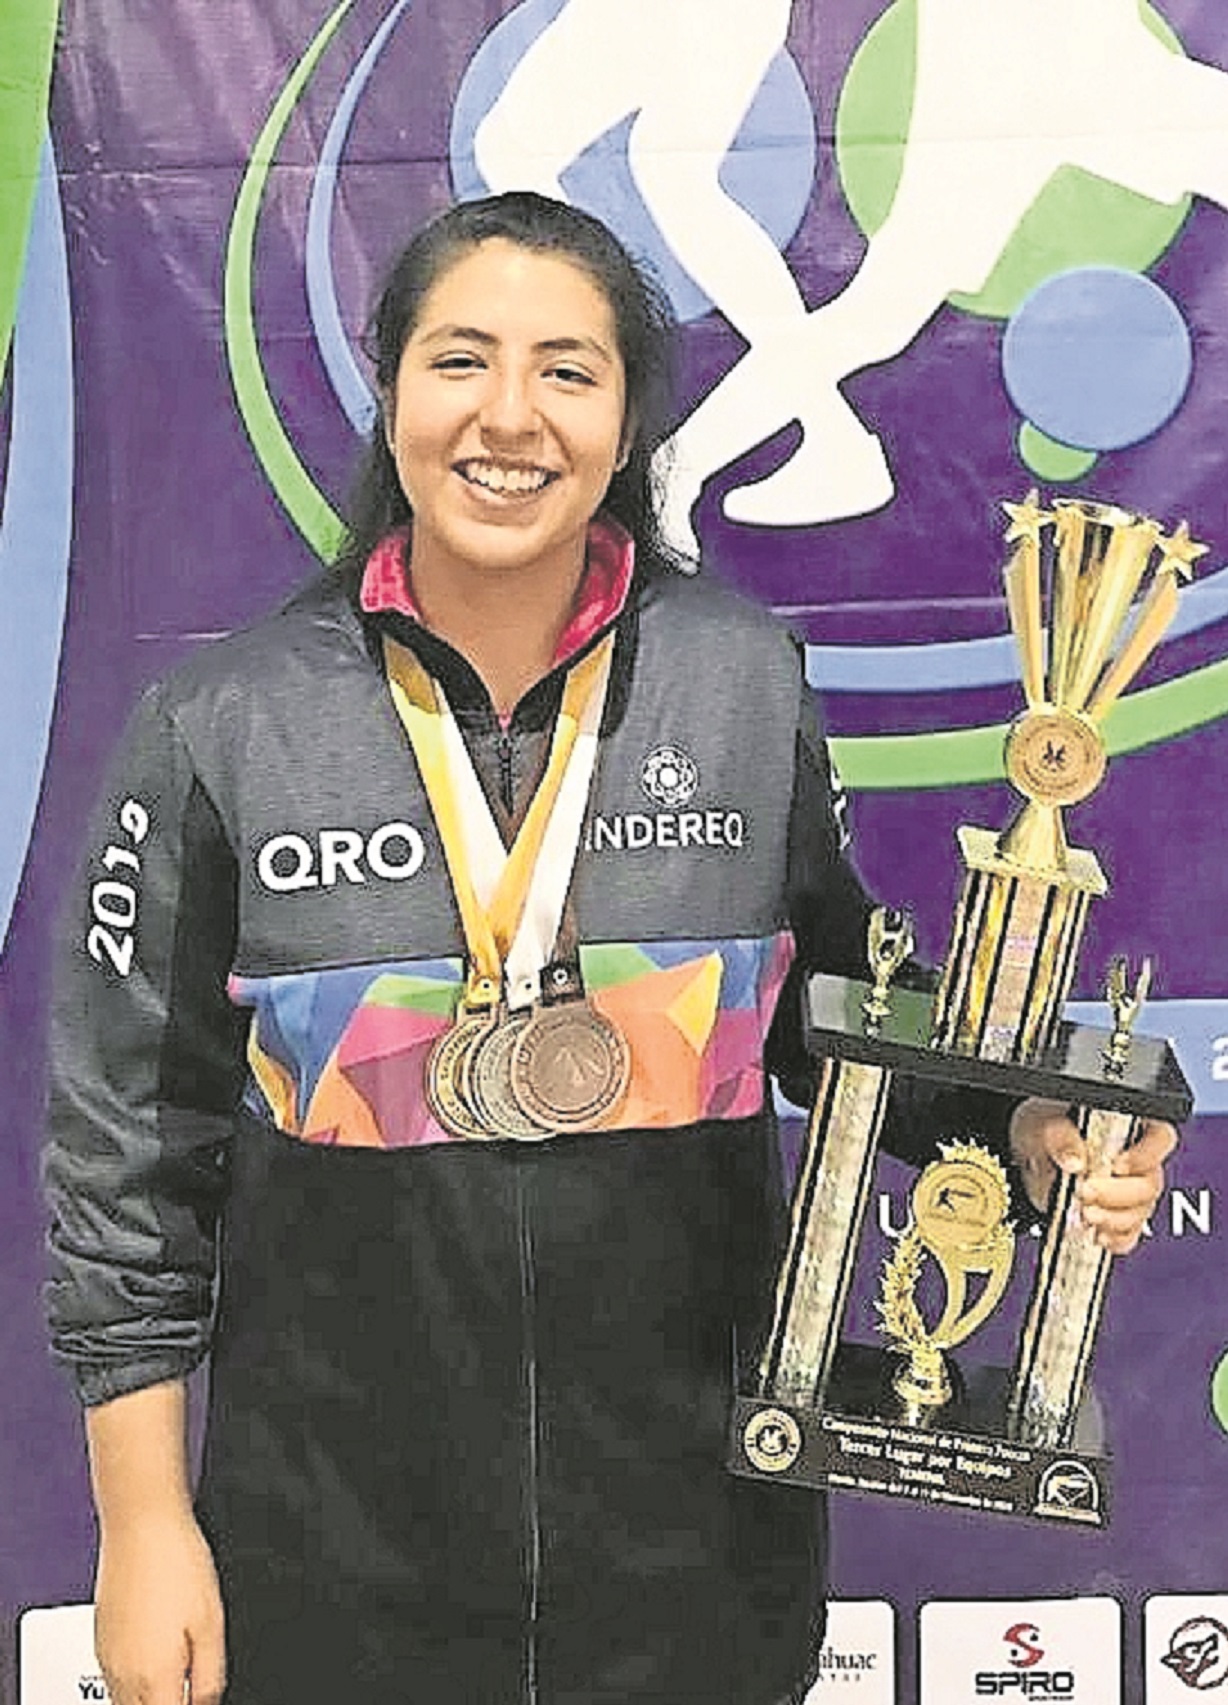 La atleta queretana inicia hoy su participación en el  Campeonato de tenis de mesa, que se celebra en Chile